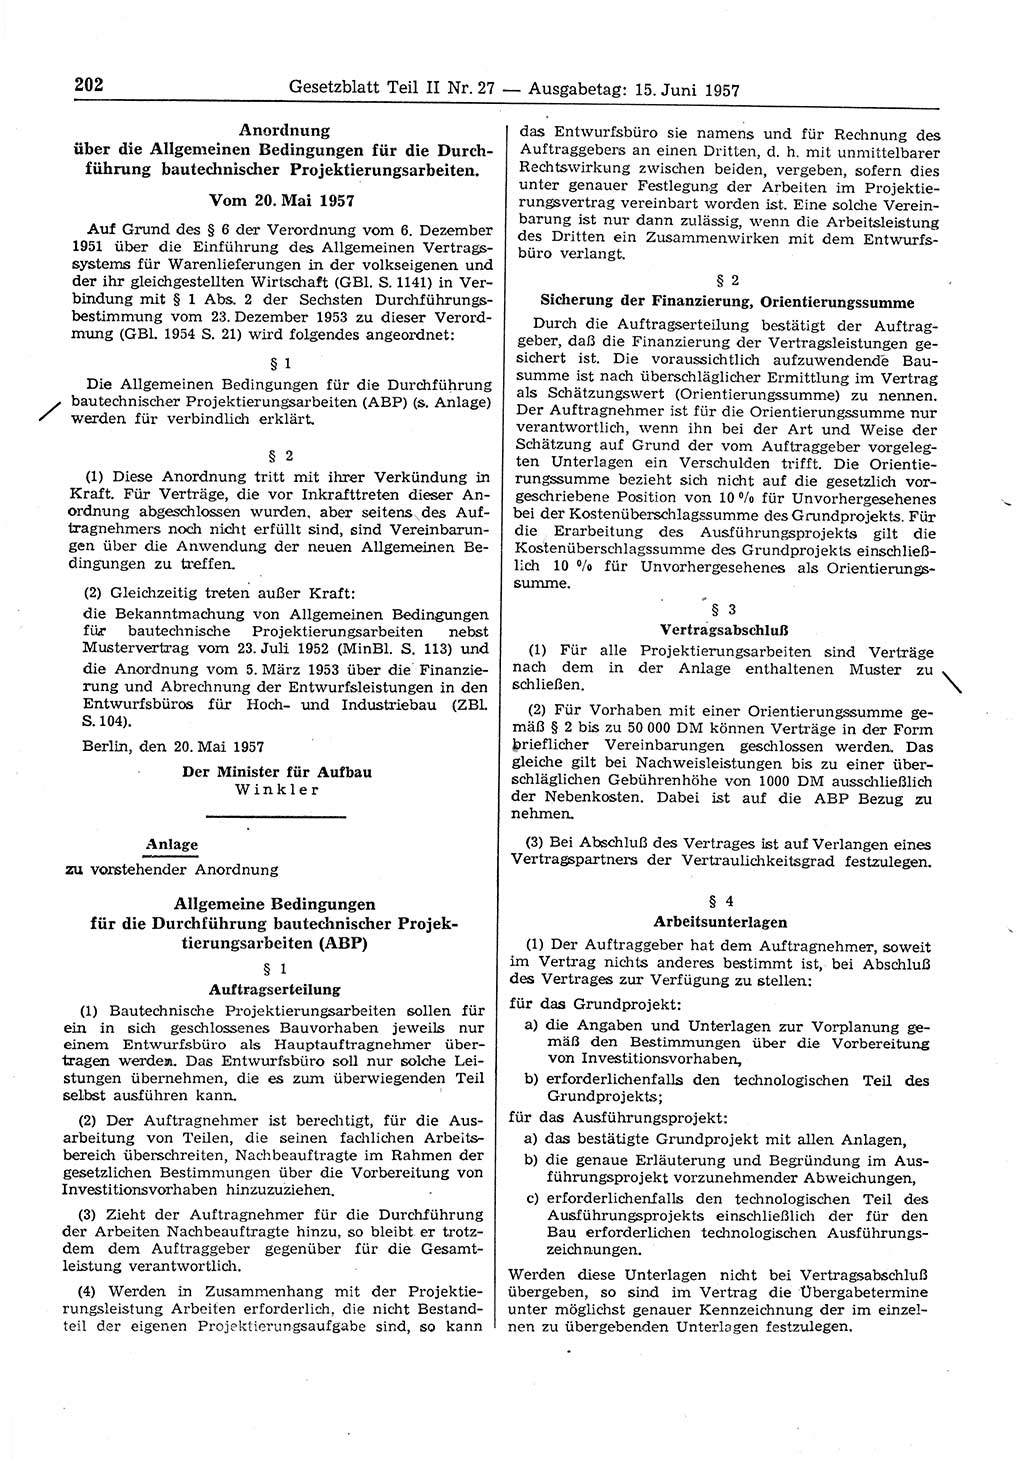 Gesetzblatt (GBl.) der Deutschen Demokratischen Republik (DDR) Teil ⅠⅠ 1957, Seite 202 (GBl. DDR ⅠⅠ 1957, S. 202)